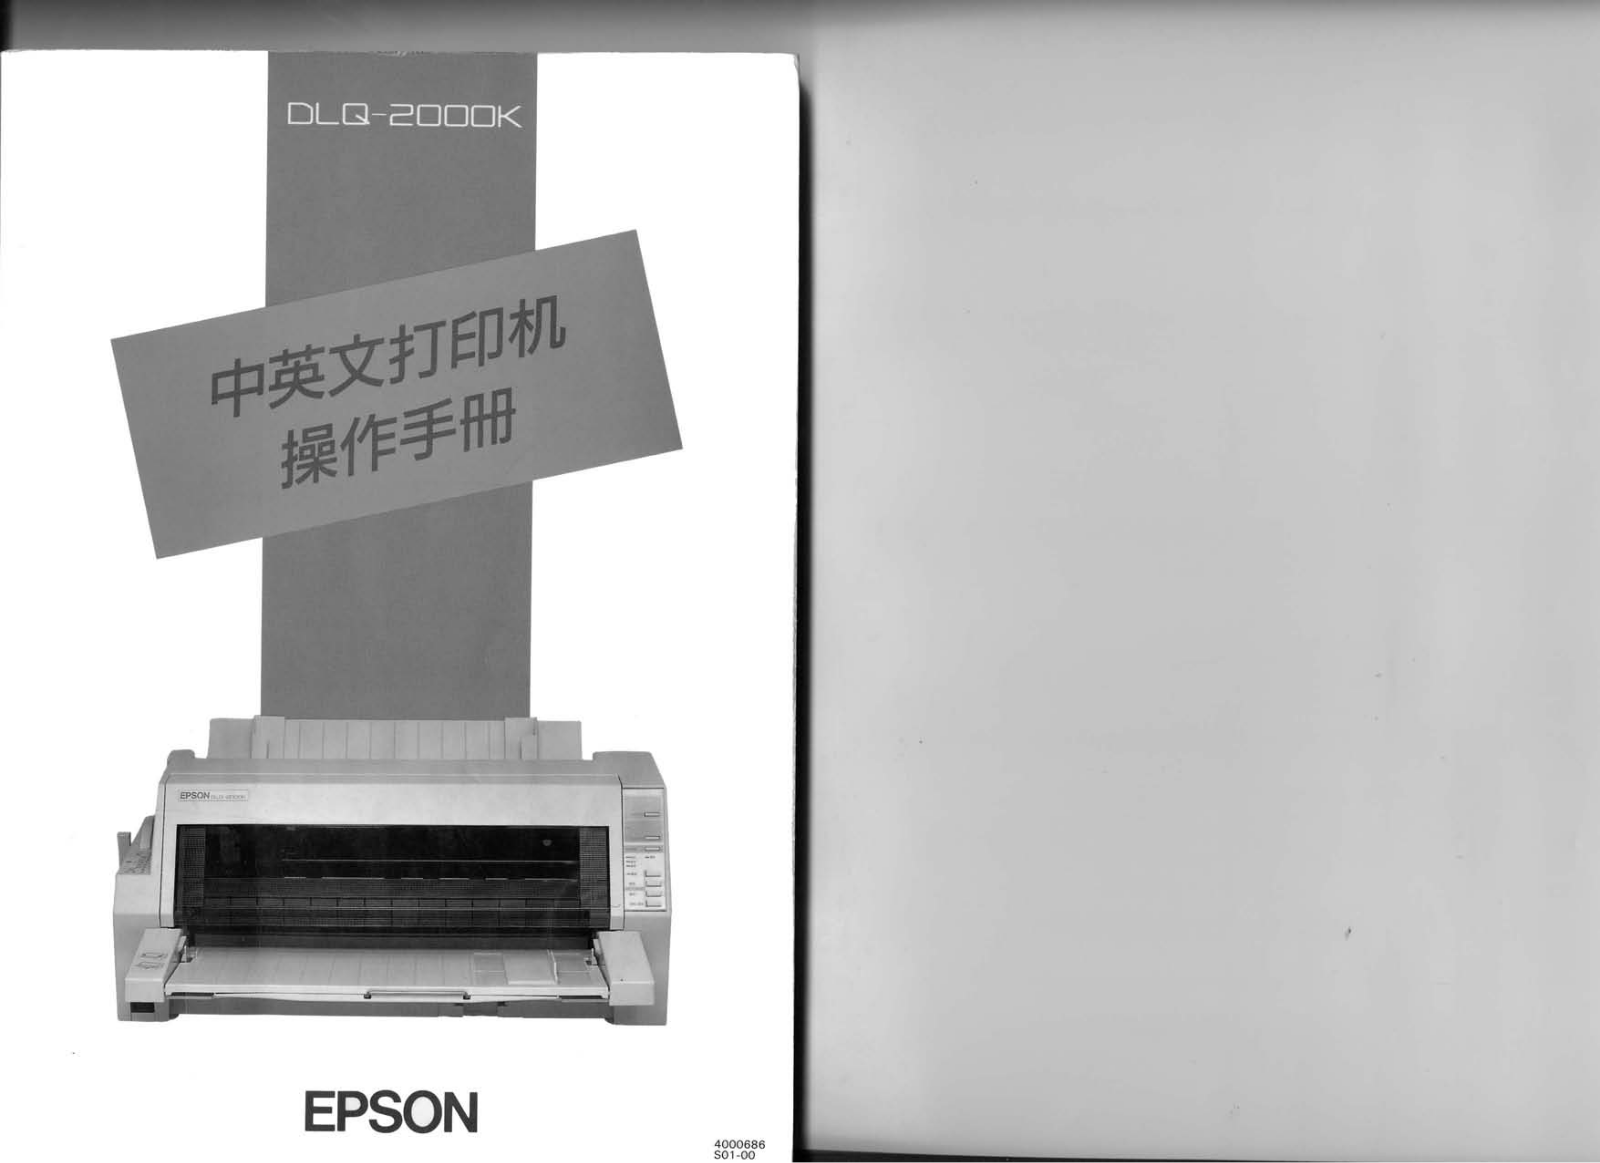 Epson DLQ-2000K User Manual